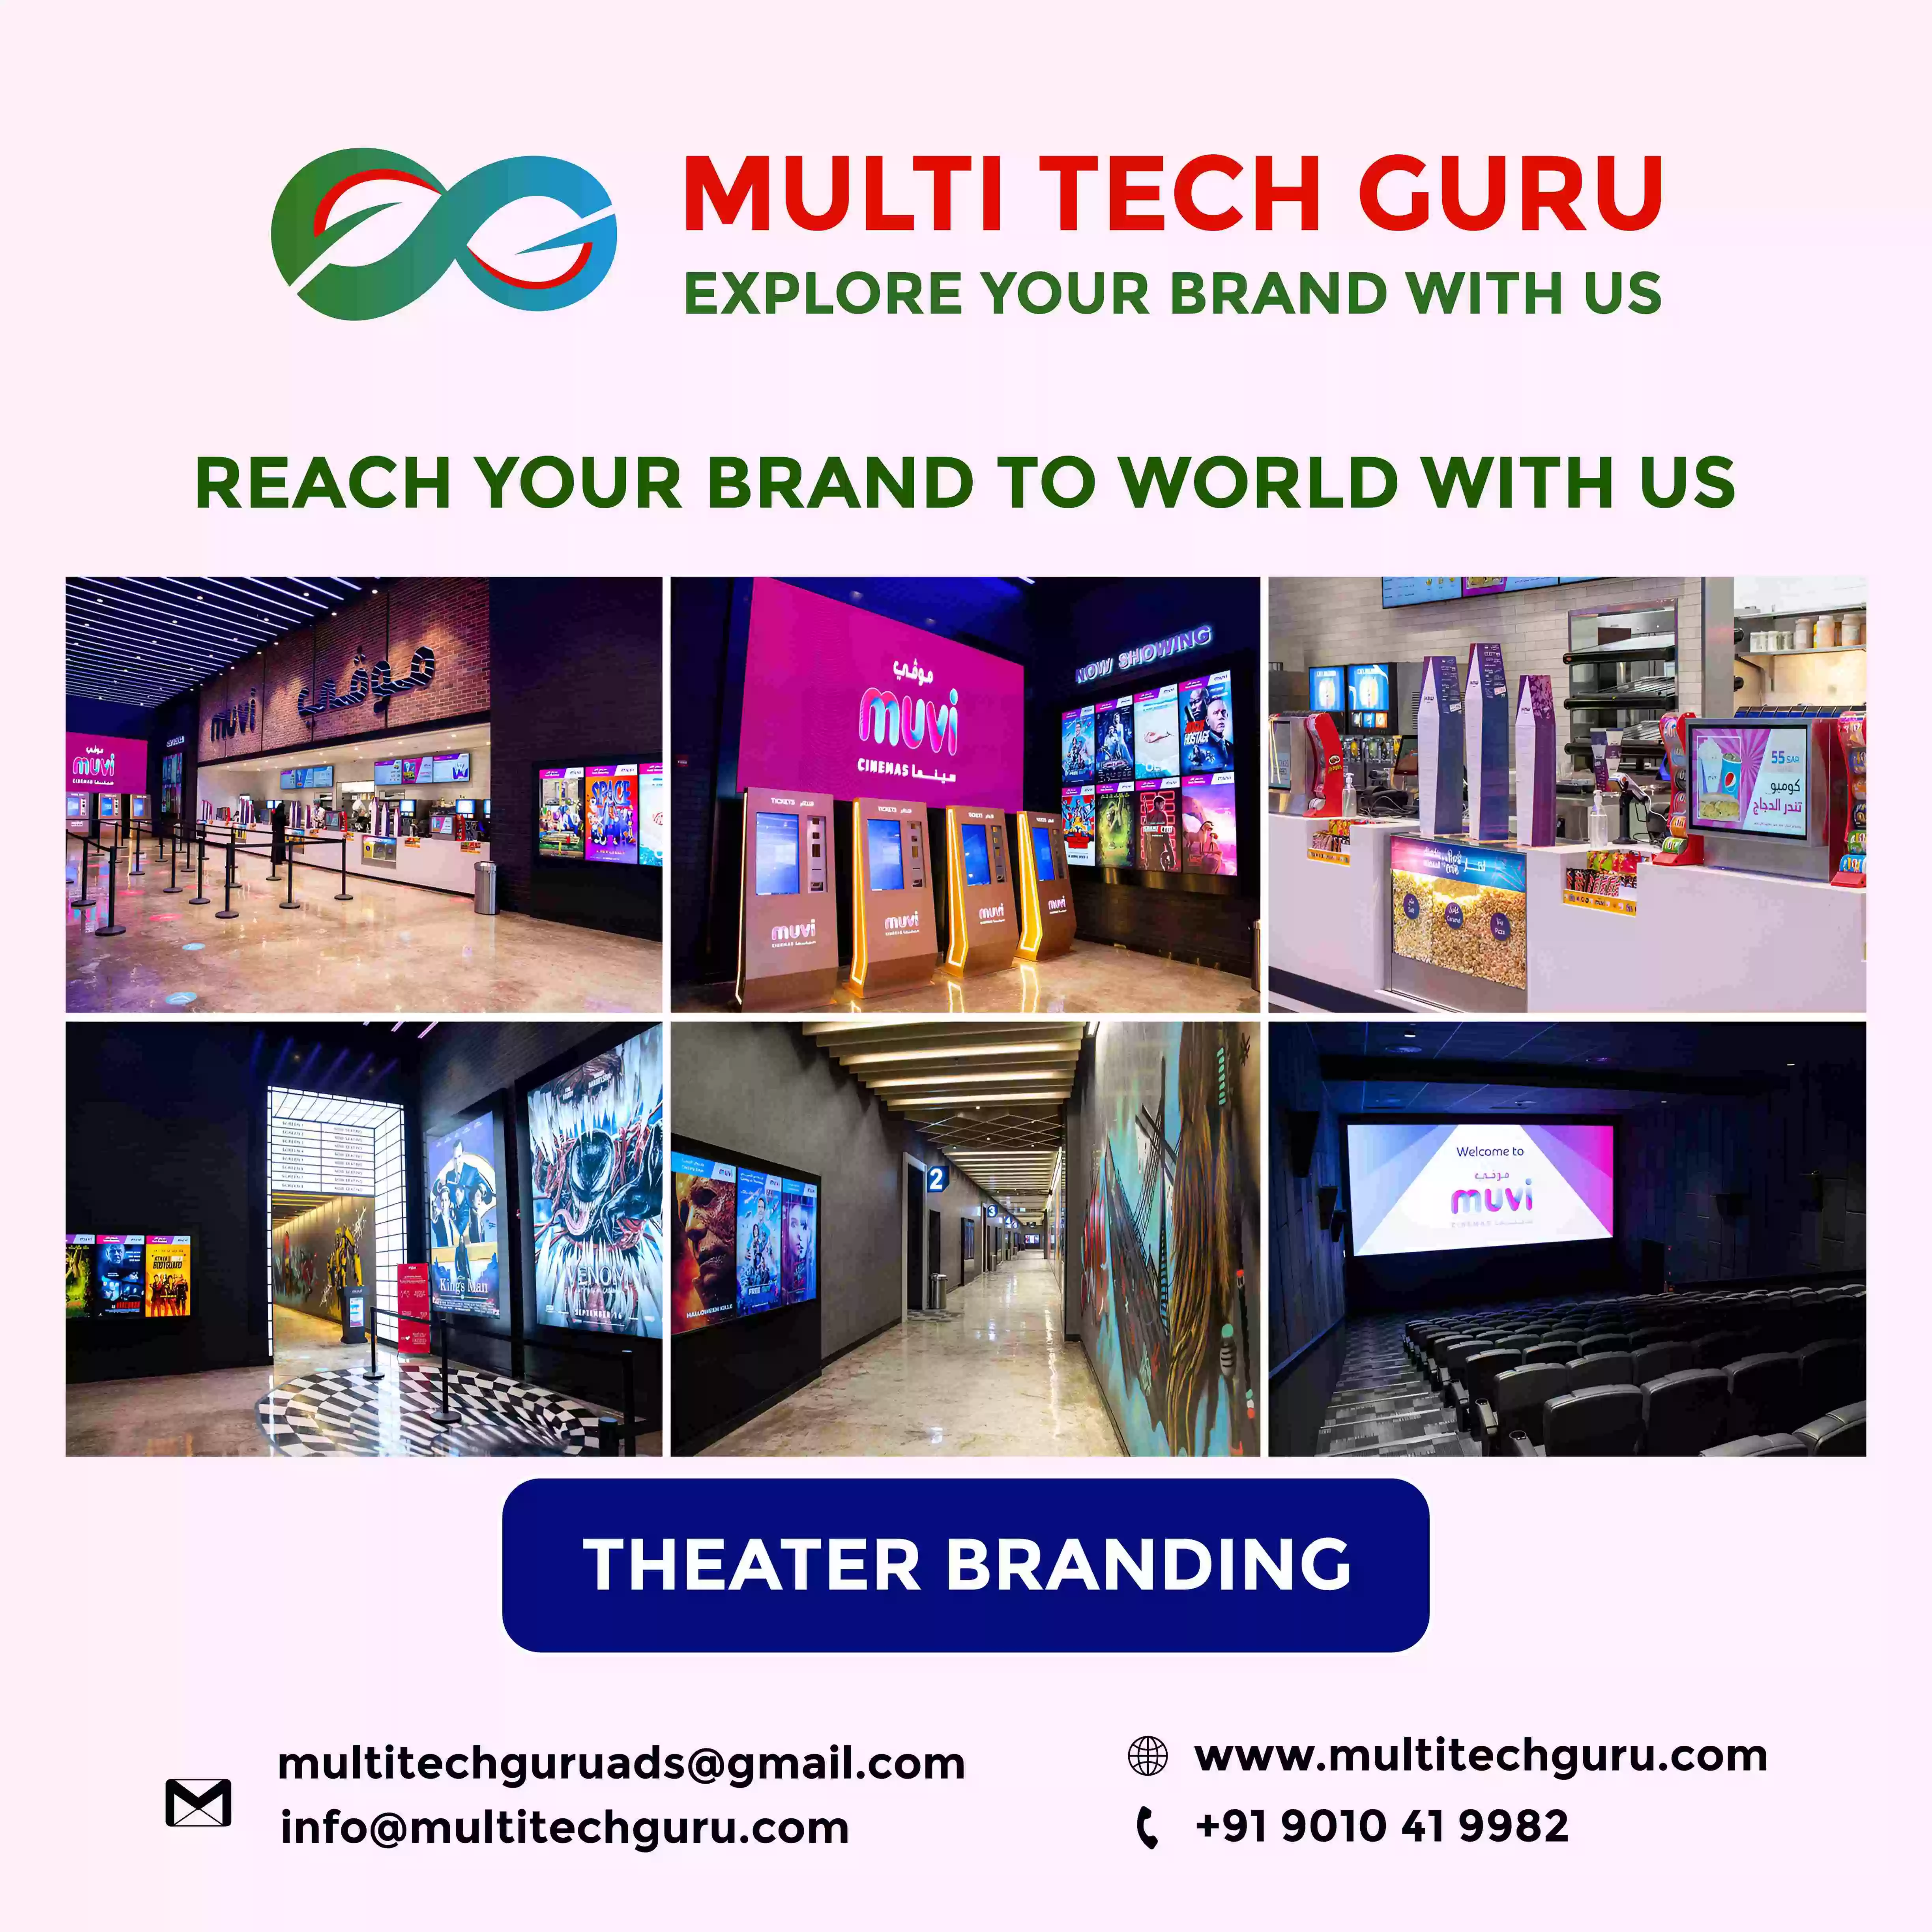 Theater-Branding-advertising-marketing-Multitechguru.com-9010419982-Outdoor-media-advertising-Print-Media-Services.jpg